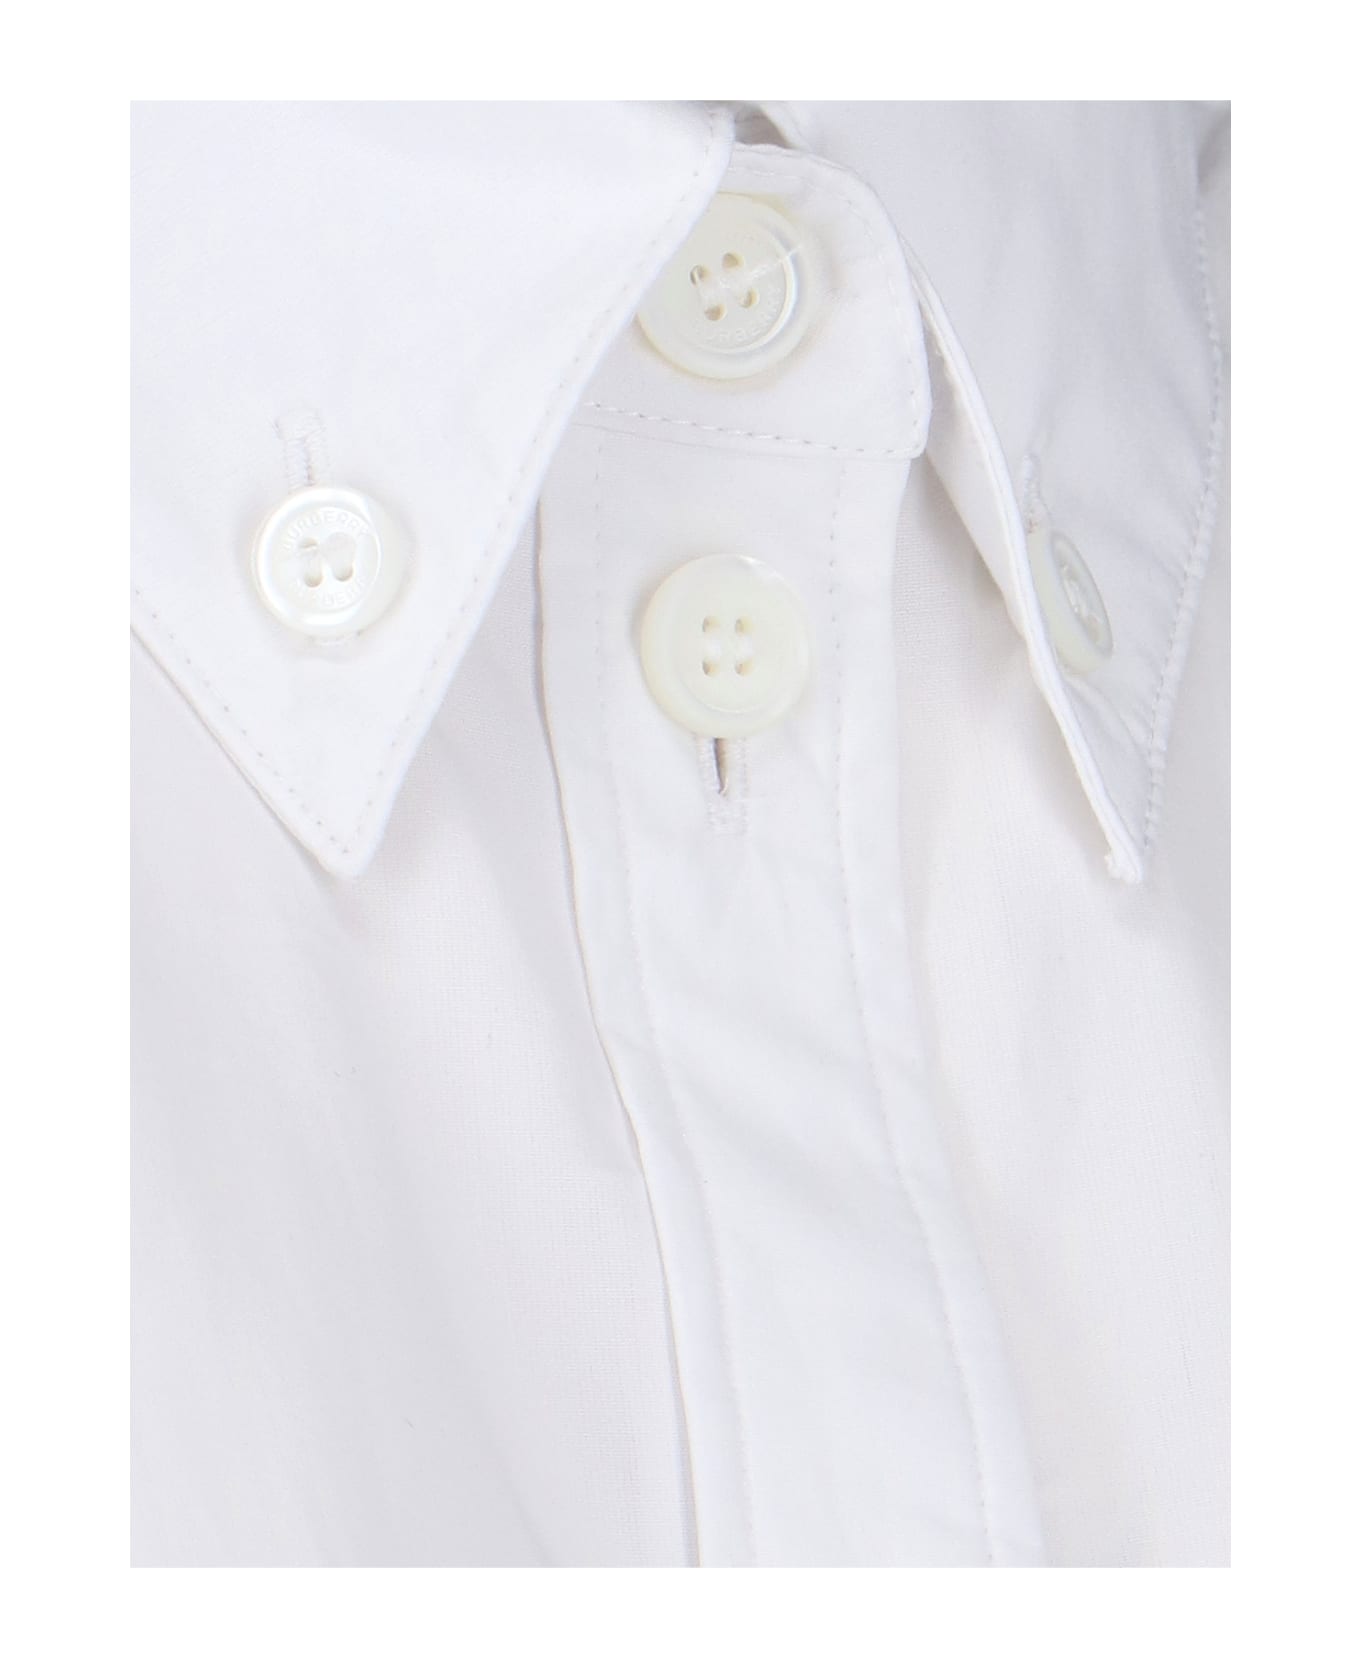 Burberry Ivanna Shirt - White